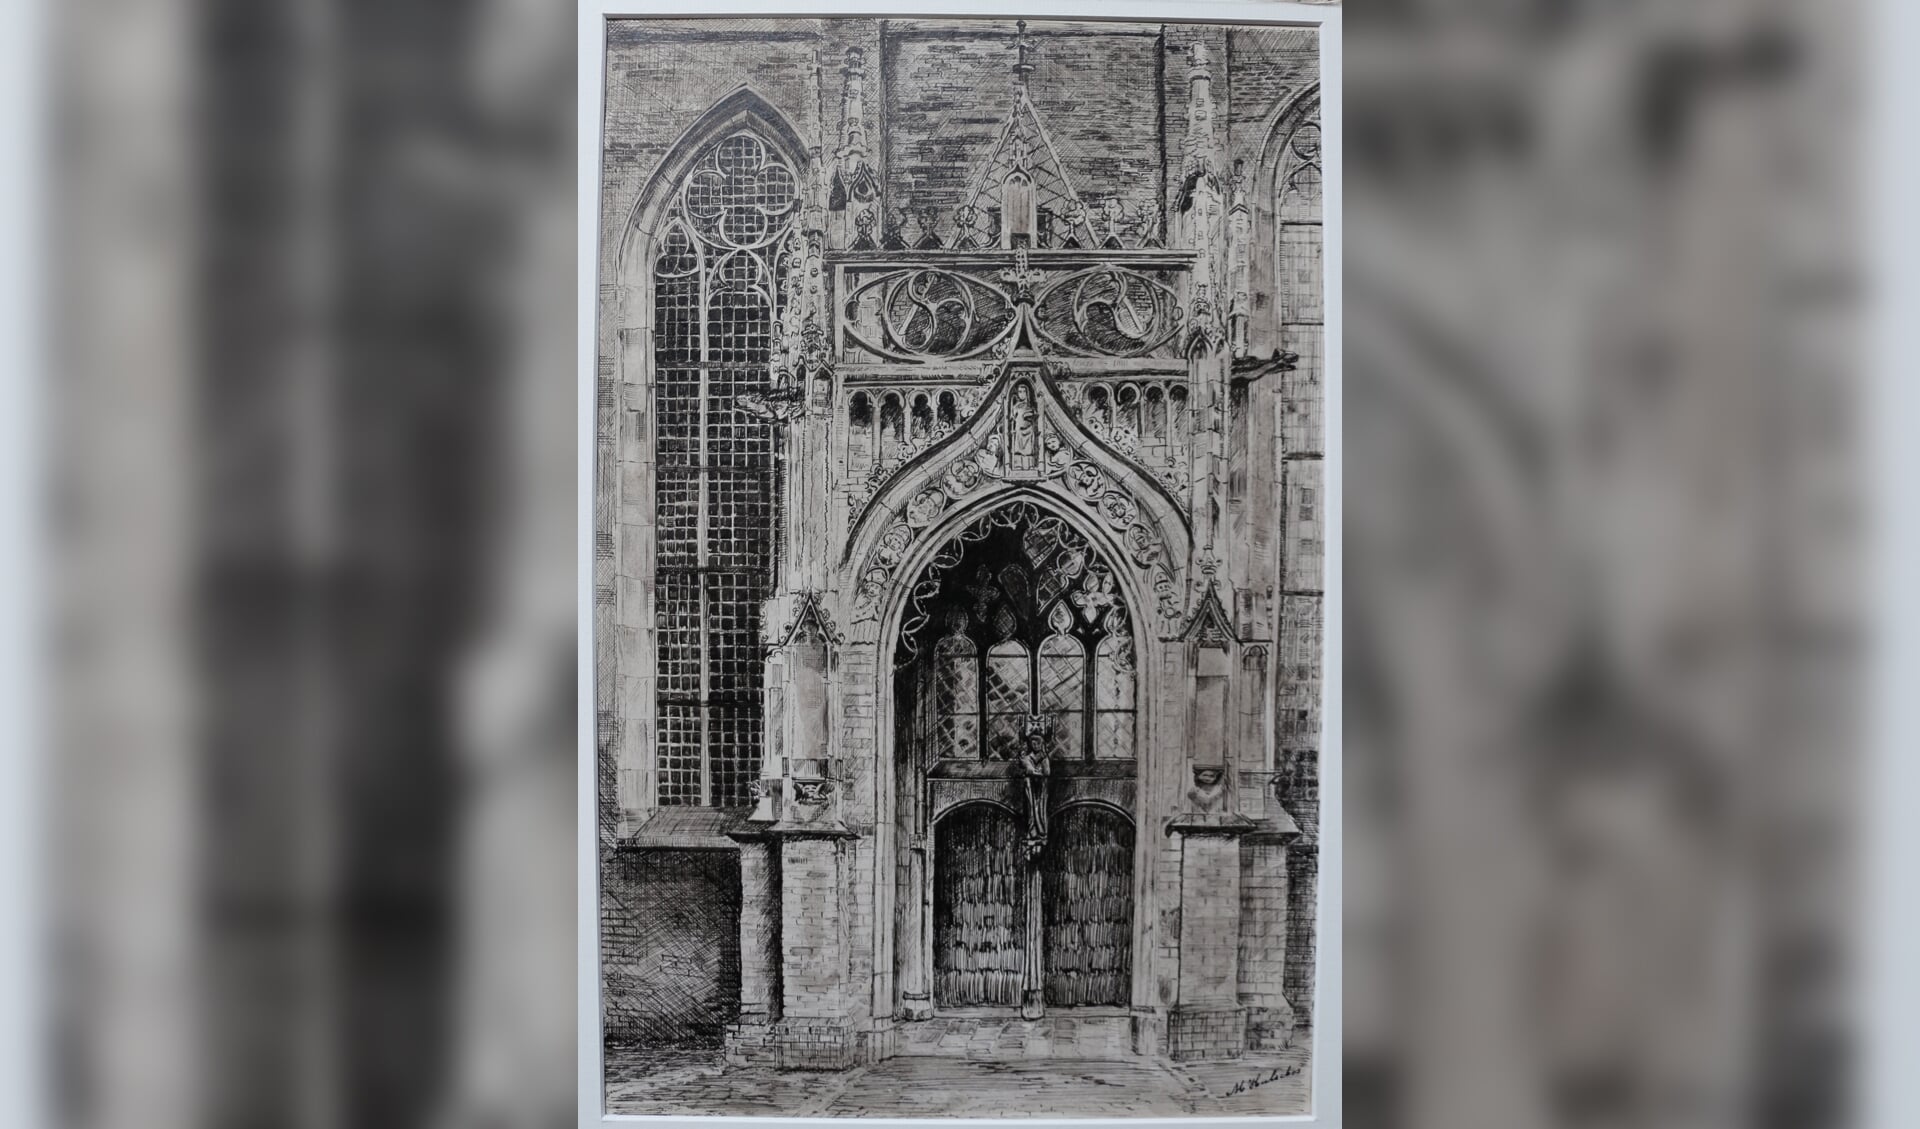 Pentekening (38x25 cm) gemaakt door M. Hulsebos van het Mariaportaal van de Walburgiskerk in Zutphen. Foto: Privécollectie